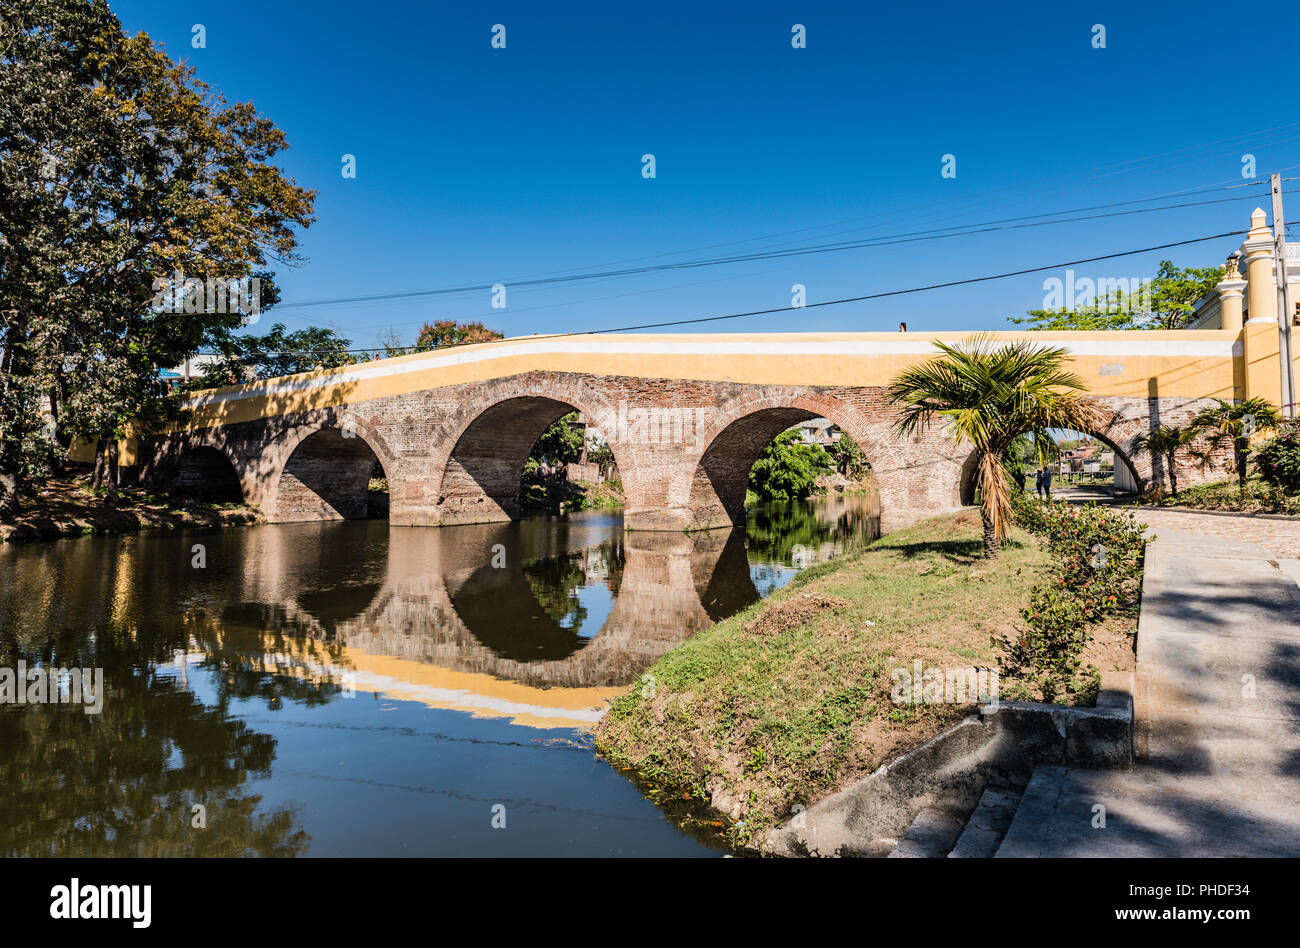 Sancti Spiritus , Cuba / Marzo 15, 2017: Dichiarato monumento nazionale nel 1995, si tratta di Cuba il ponte più antico. Foto Stock